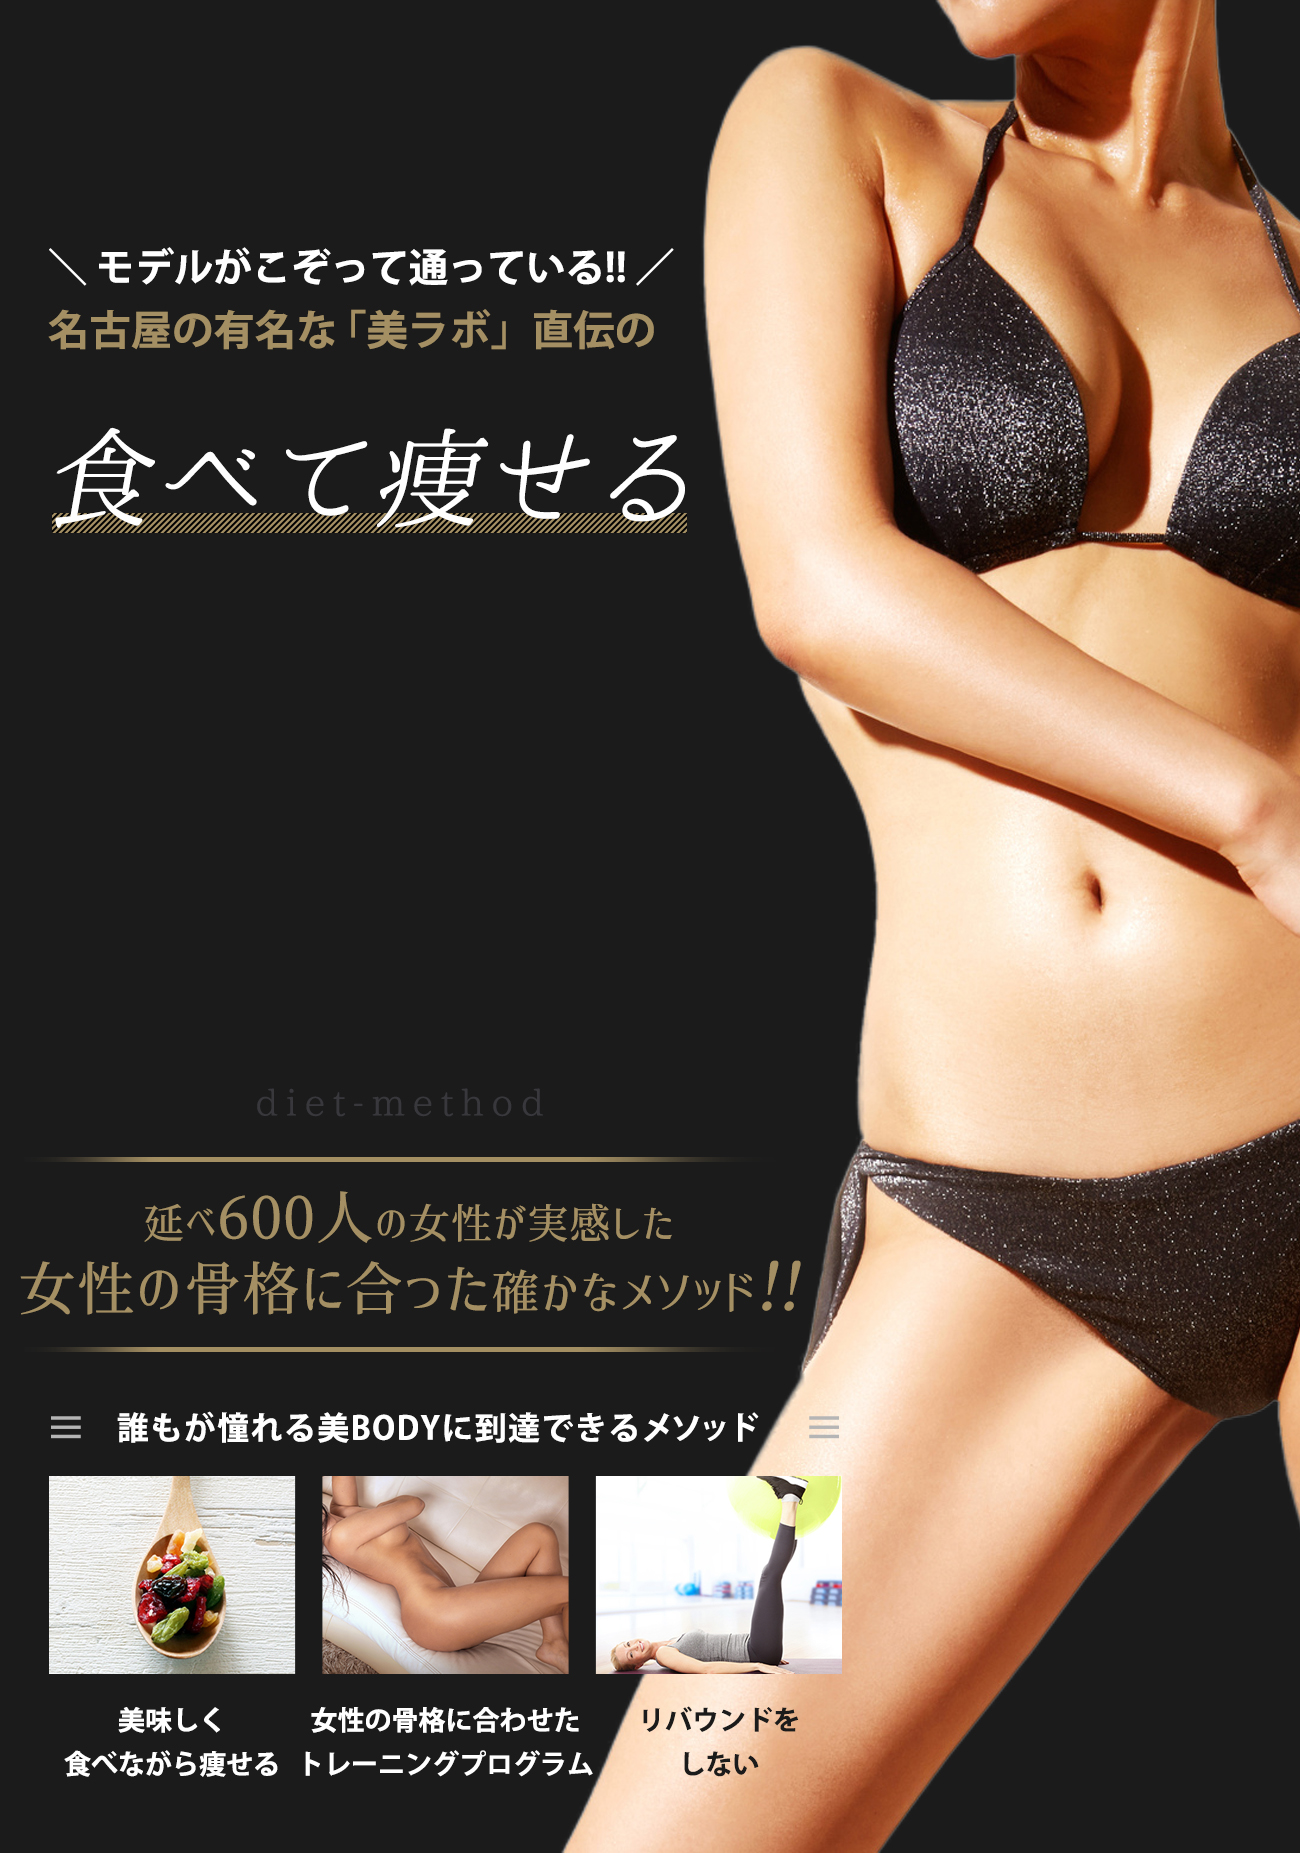 モデルがこぞって通っている!!名古屋の有名な「美ラボ」直伝の食べて痩せる新発想のダイエットメソッド！女性の骨格に合った誰もが憧れる美BODYに到達できるメソッド。